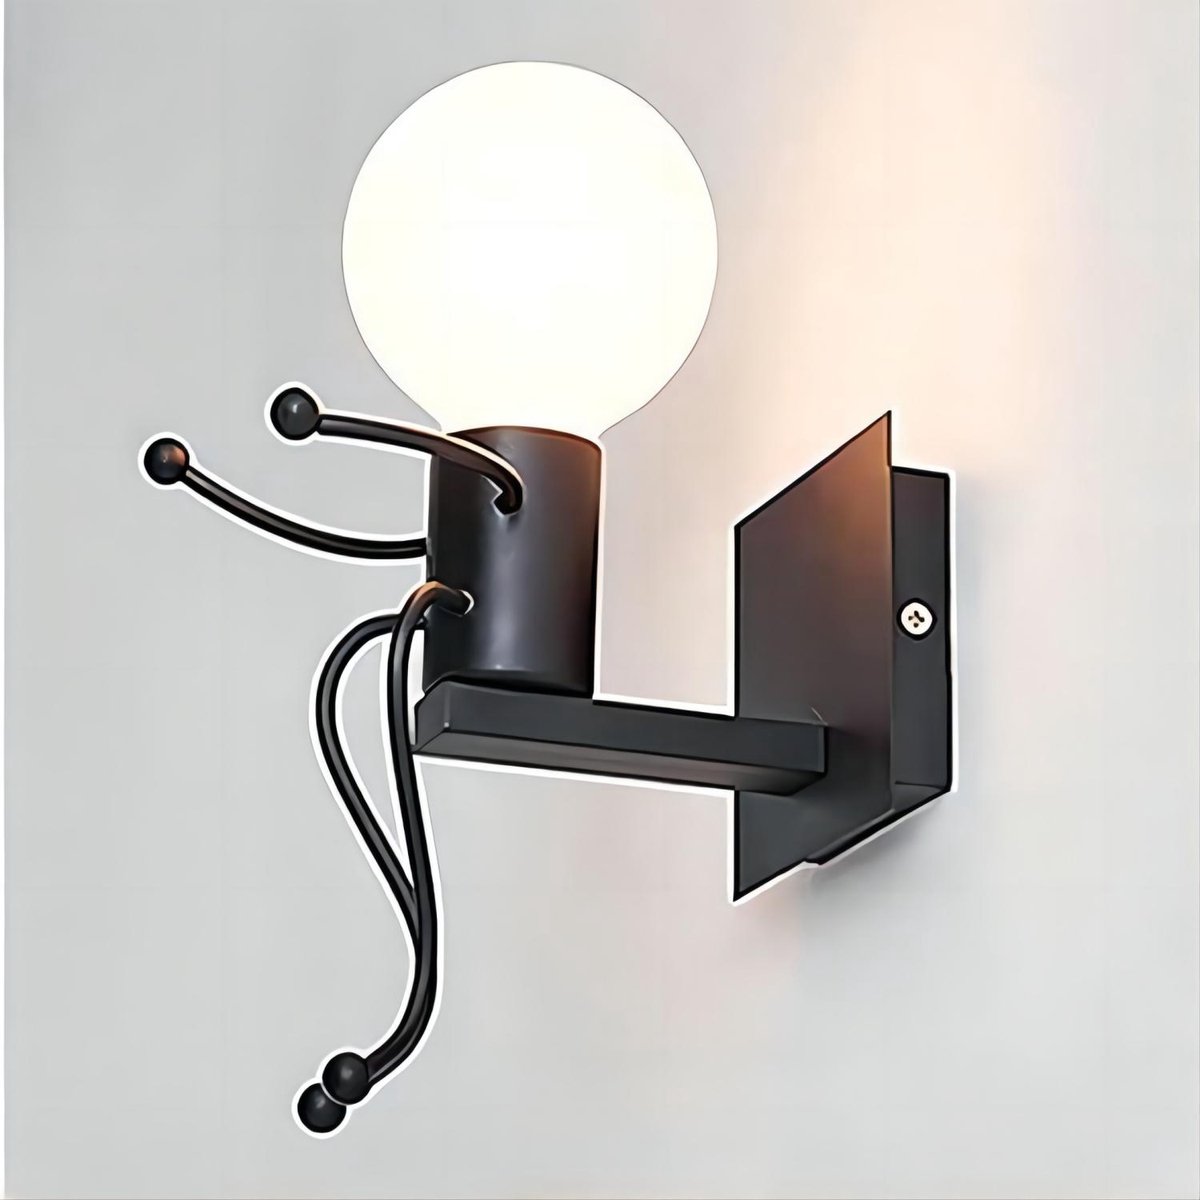 Goeco Wandlamp - 19cm - Klein - E27 - Iron Man - Vintage Zwarte Metalen Wandlamp - Lamp Niet Inbegrepen